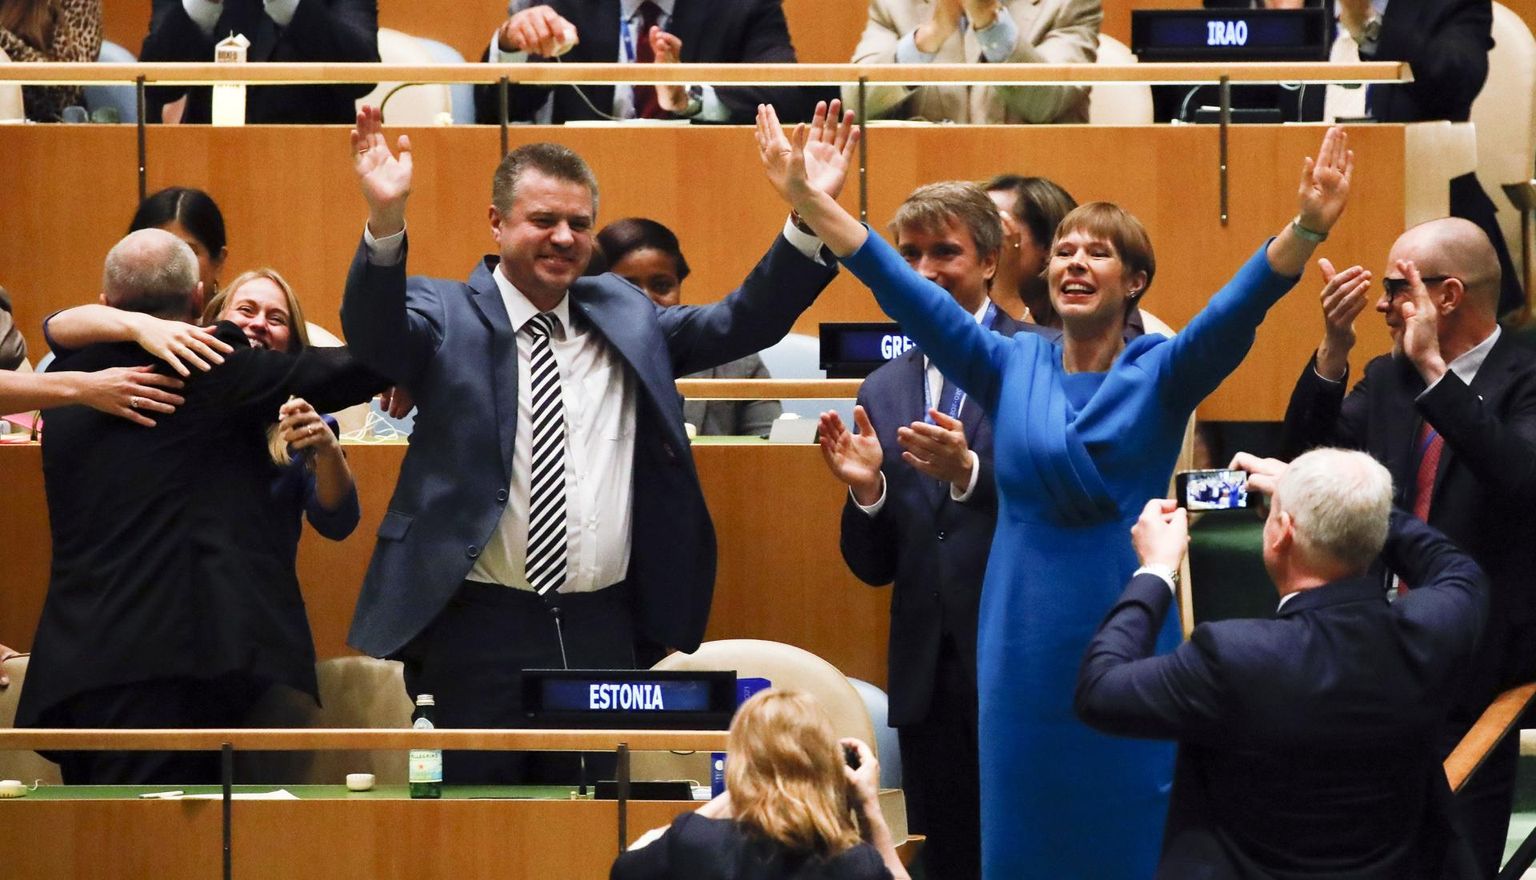 Eesti delegatsioon eesotsas president Kersti Kaljulaidi ja välisminister Urmas Reinsaluga rõõmustab võidu puhul: Eesti on 2020. aastast ÜRO Julgeolekunõukogu mittealaline liige.